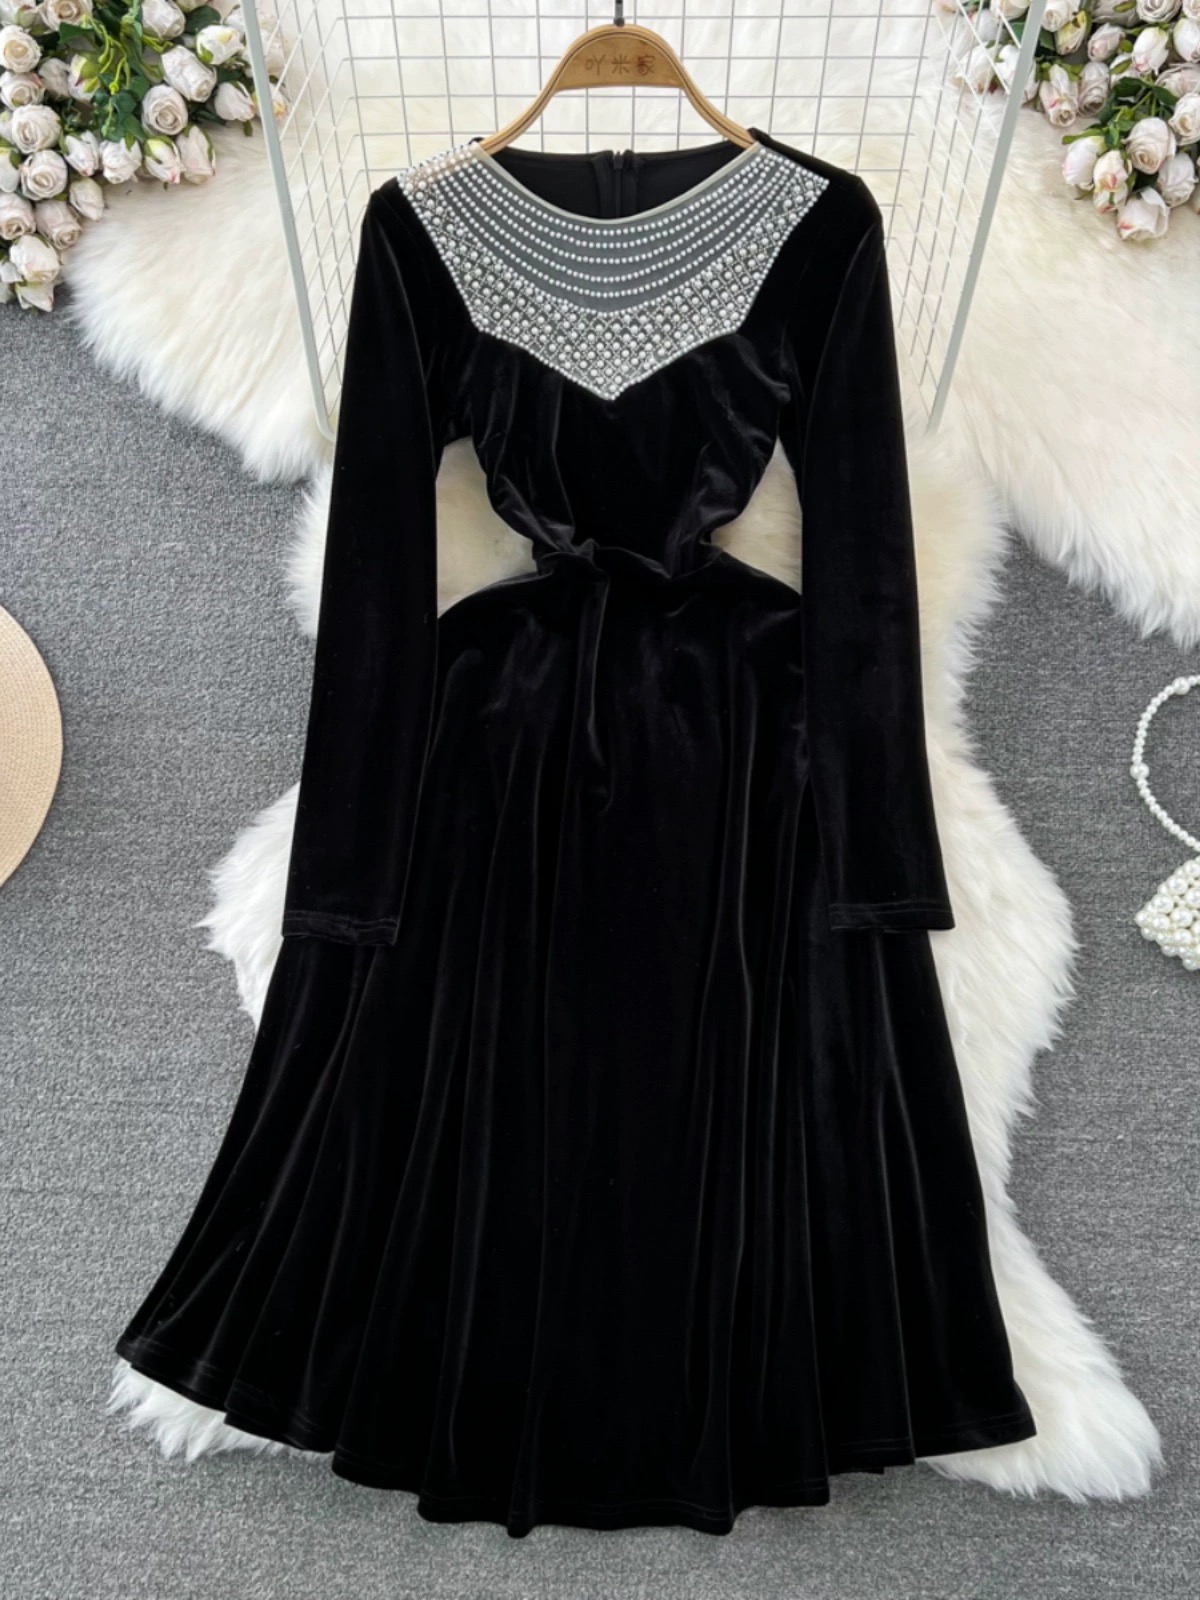 Elegant Velvet Long Sleeve Dress Stylish Black Dress